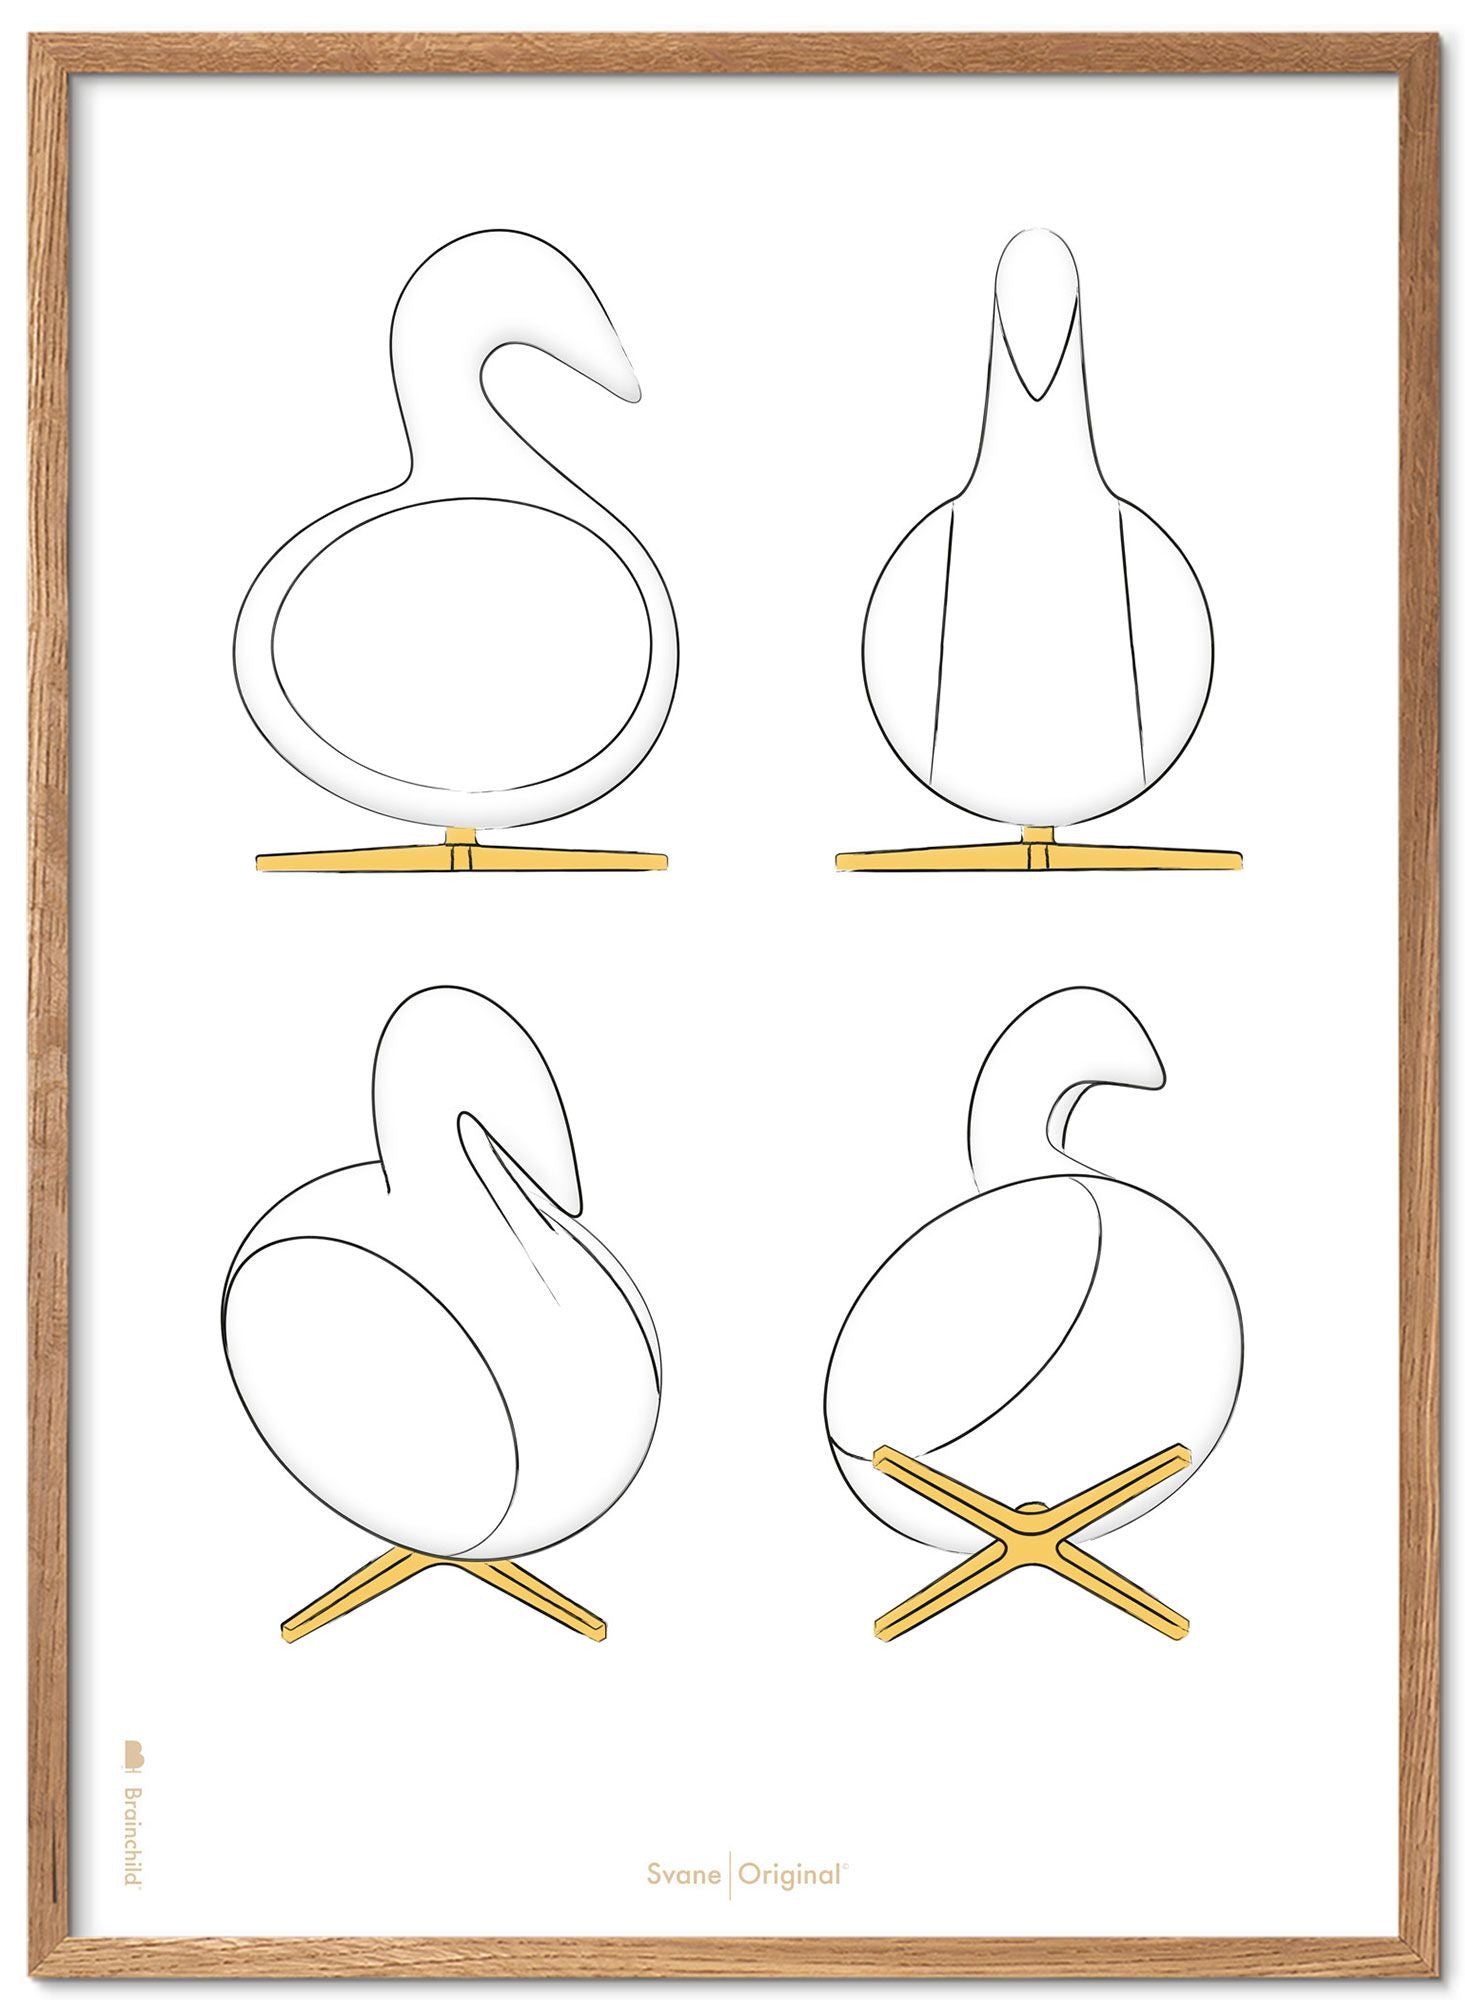 Brainchild Swan Design Sketches Poster Frame lavet af let træ 50x70 cm, hvid baggrund